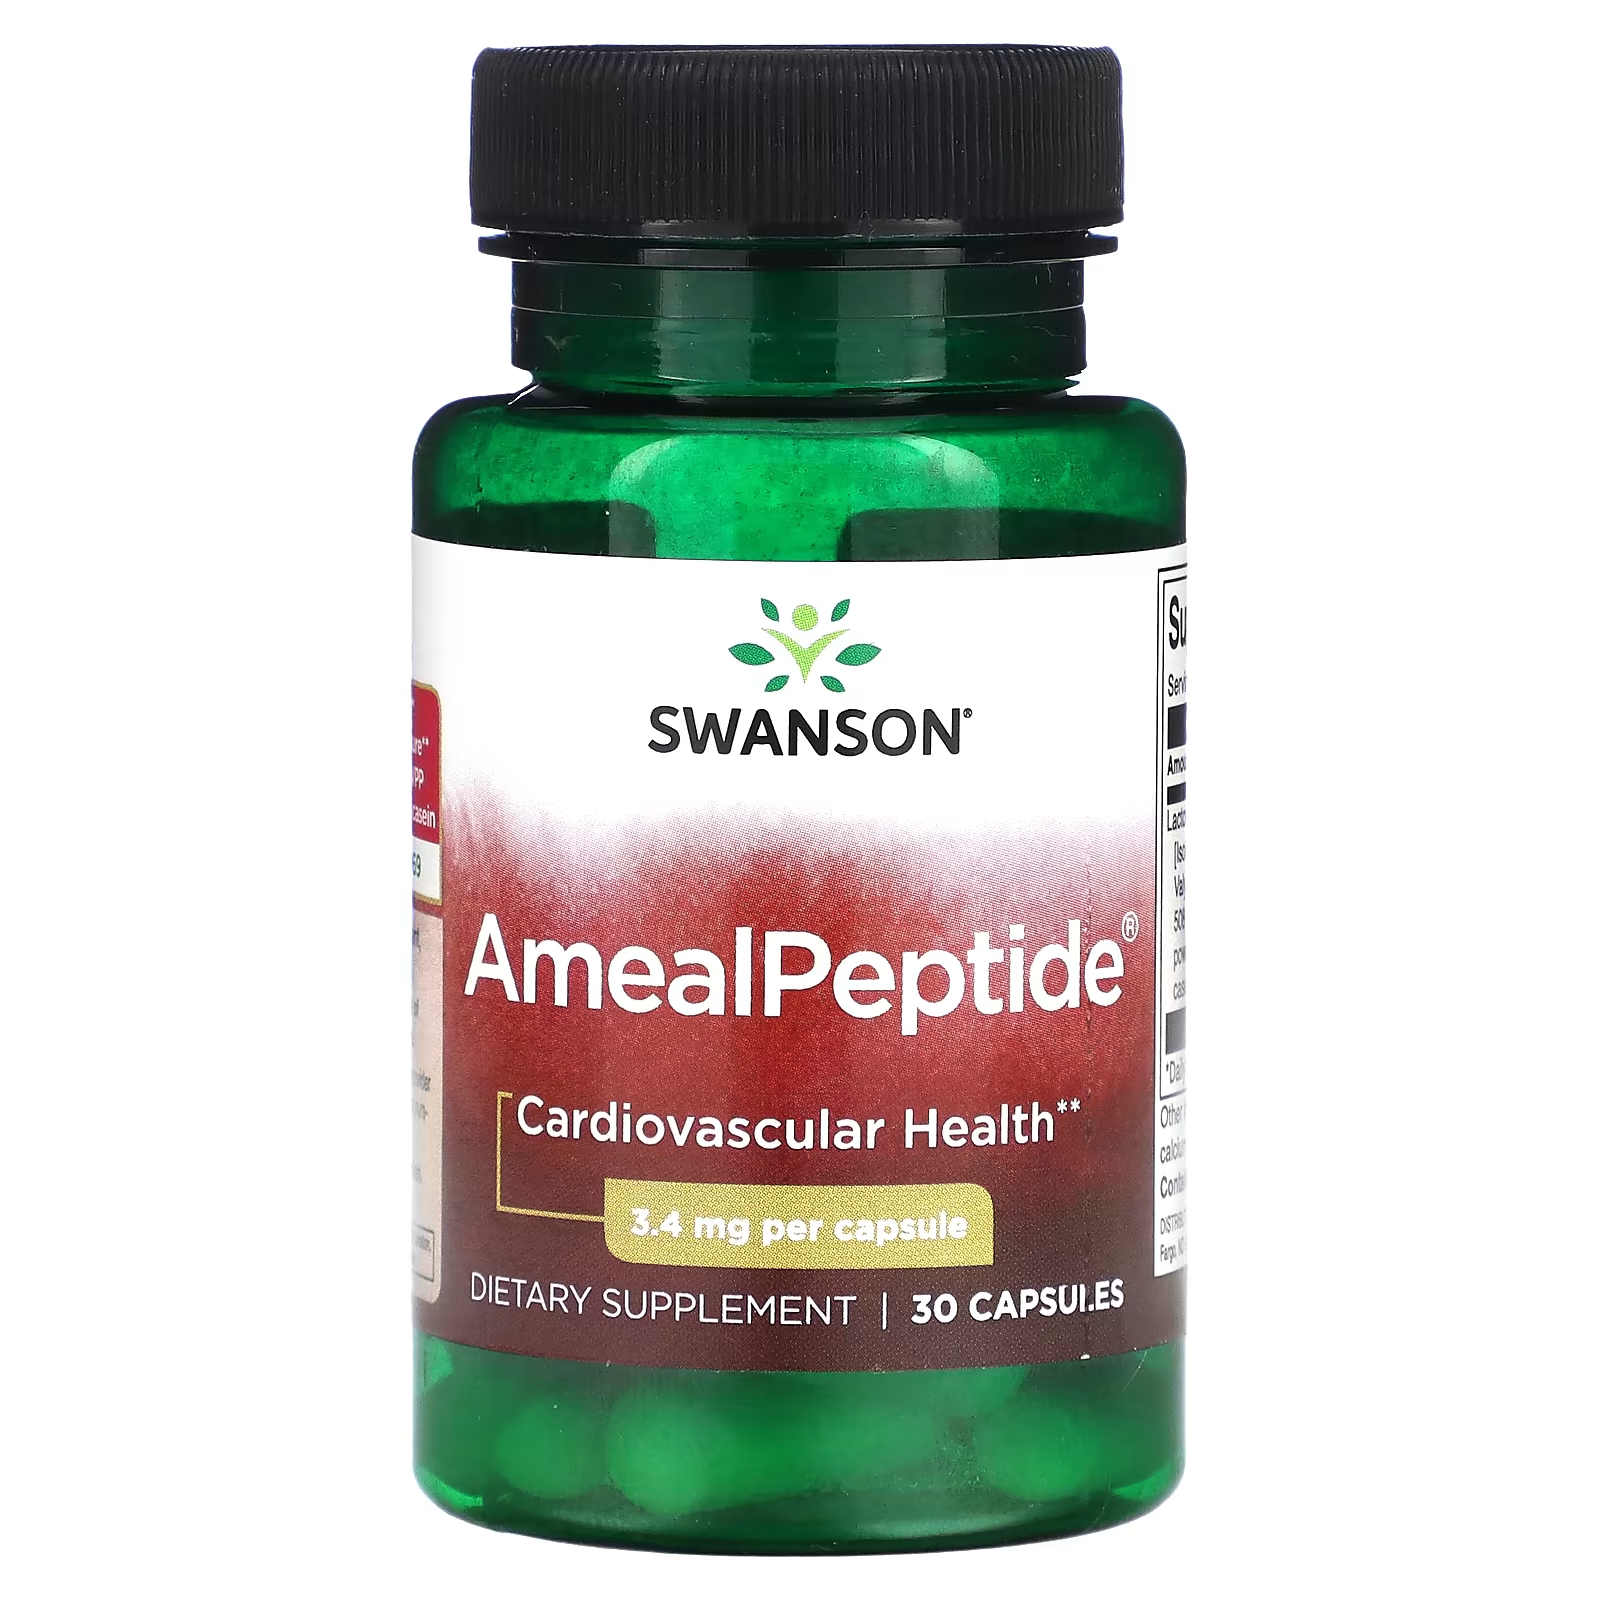 Пищевая добавка Swanson AmealPeptide 34 мг, 30 капсул пищевая добавка для балансировки крови поддерживает сердечно сосудистое заболевание добавление витаминов и общее процветание